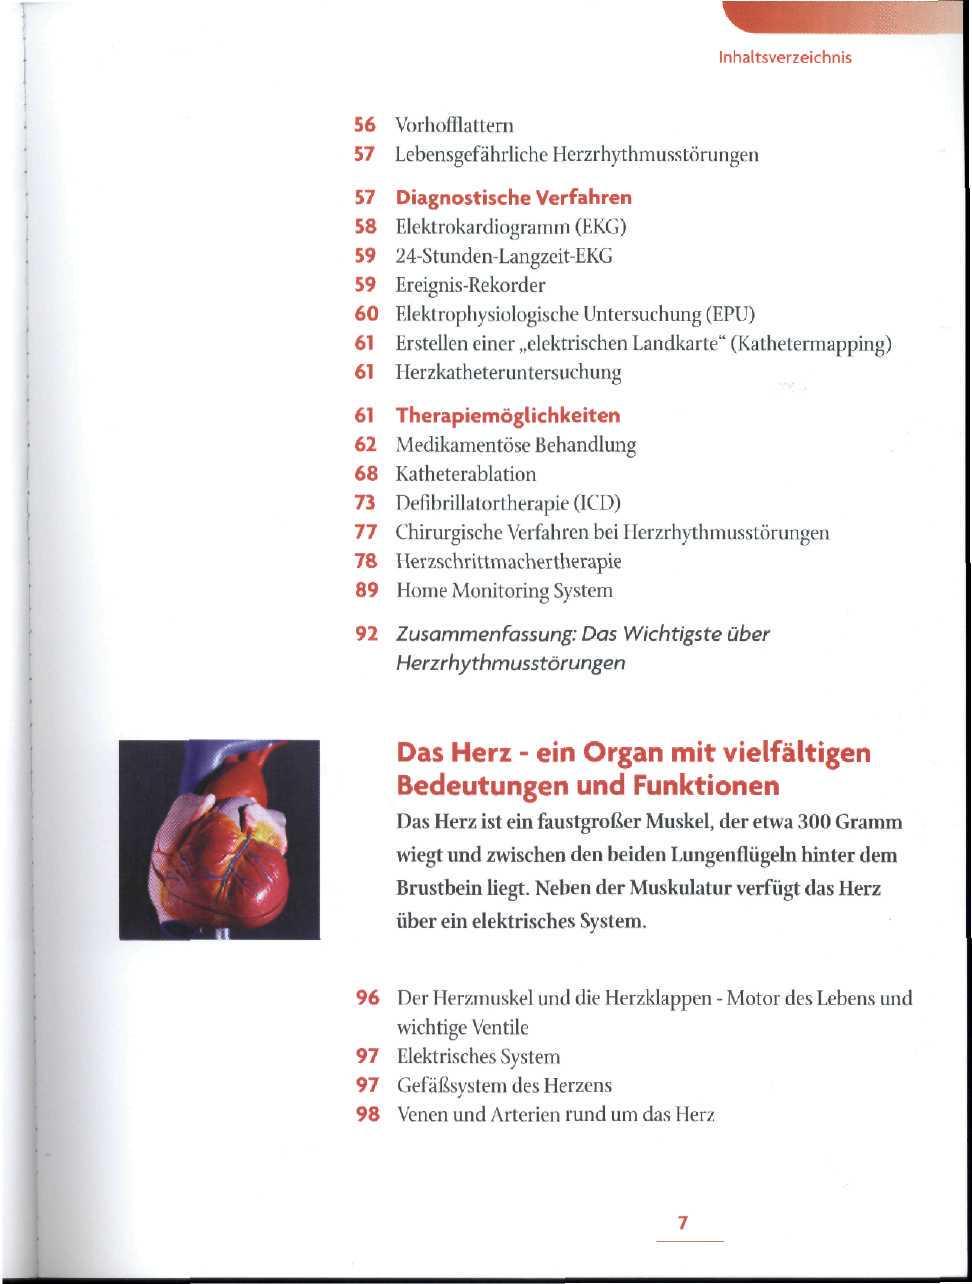 56 Vorhofflattern 57 Lebensgefährliche Herzrhythmusstörungen 57 Diagnostische Verfahren 58 Elektrokardiogramm (EKG) 59 24-Stunden-Langzeit-EKG 59 Ereignis-Rekorder 60 F.